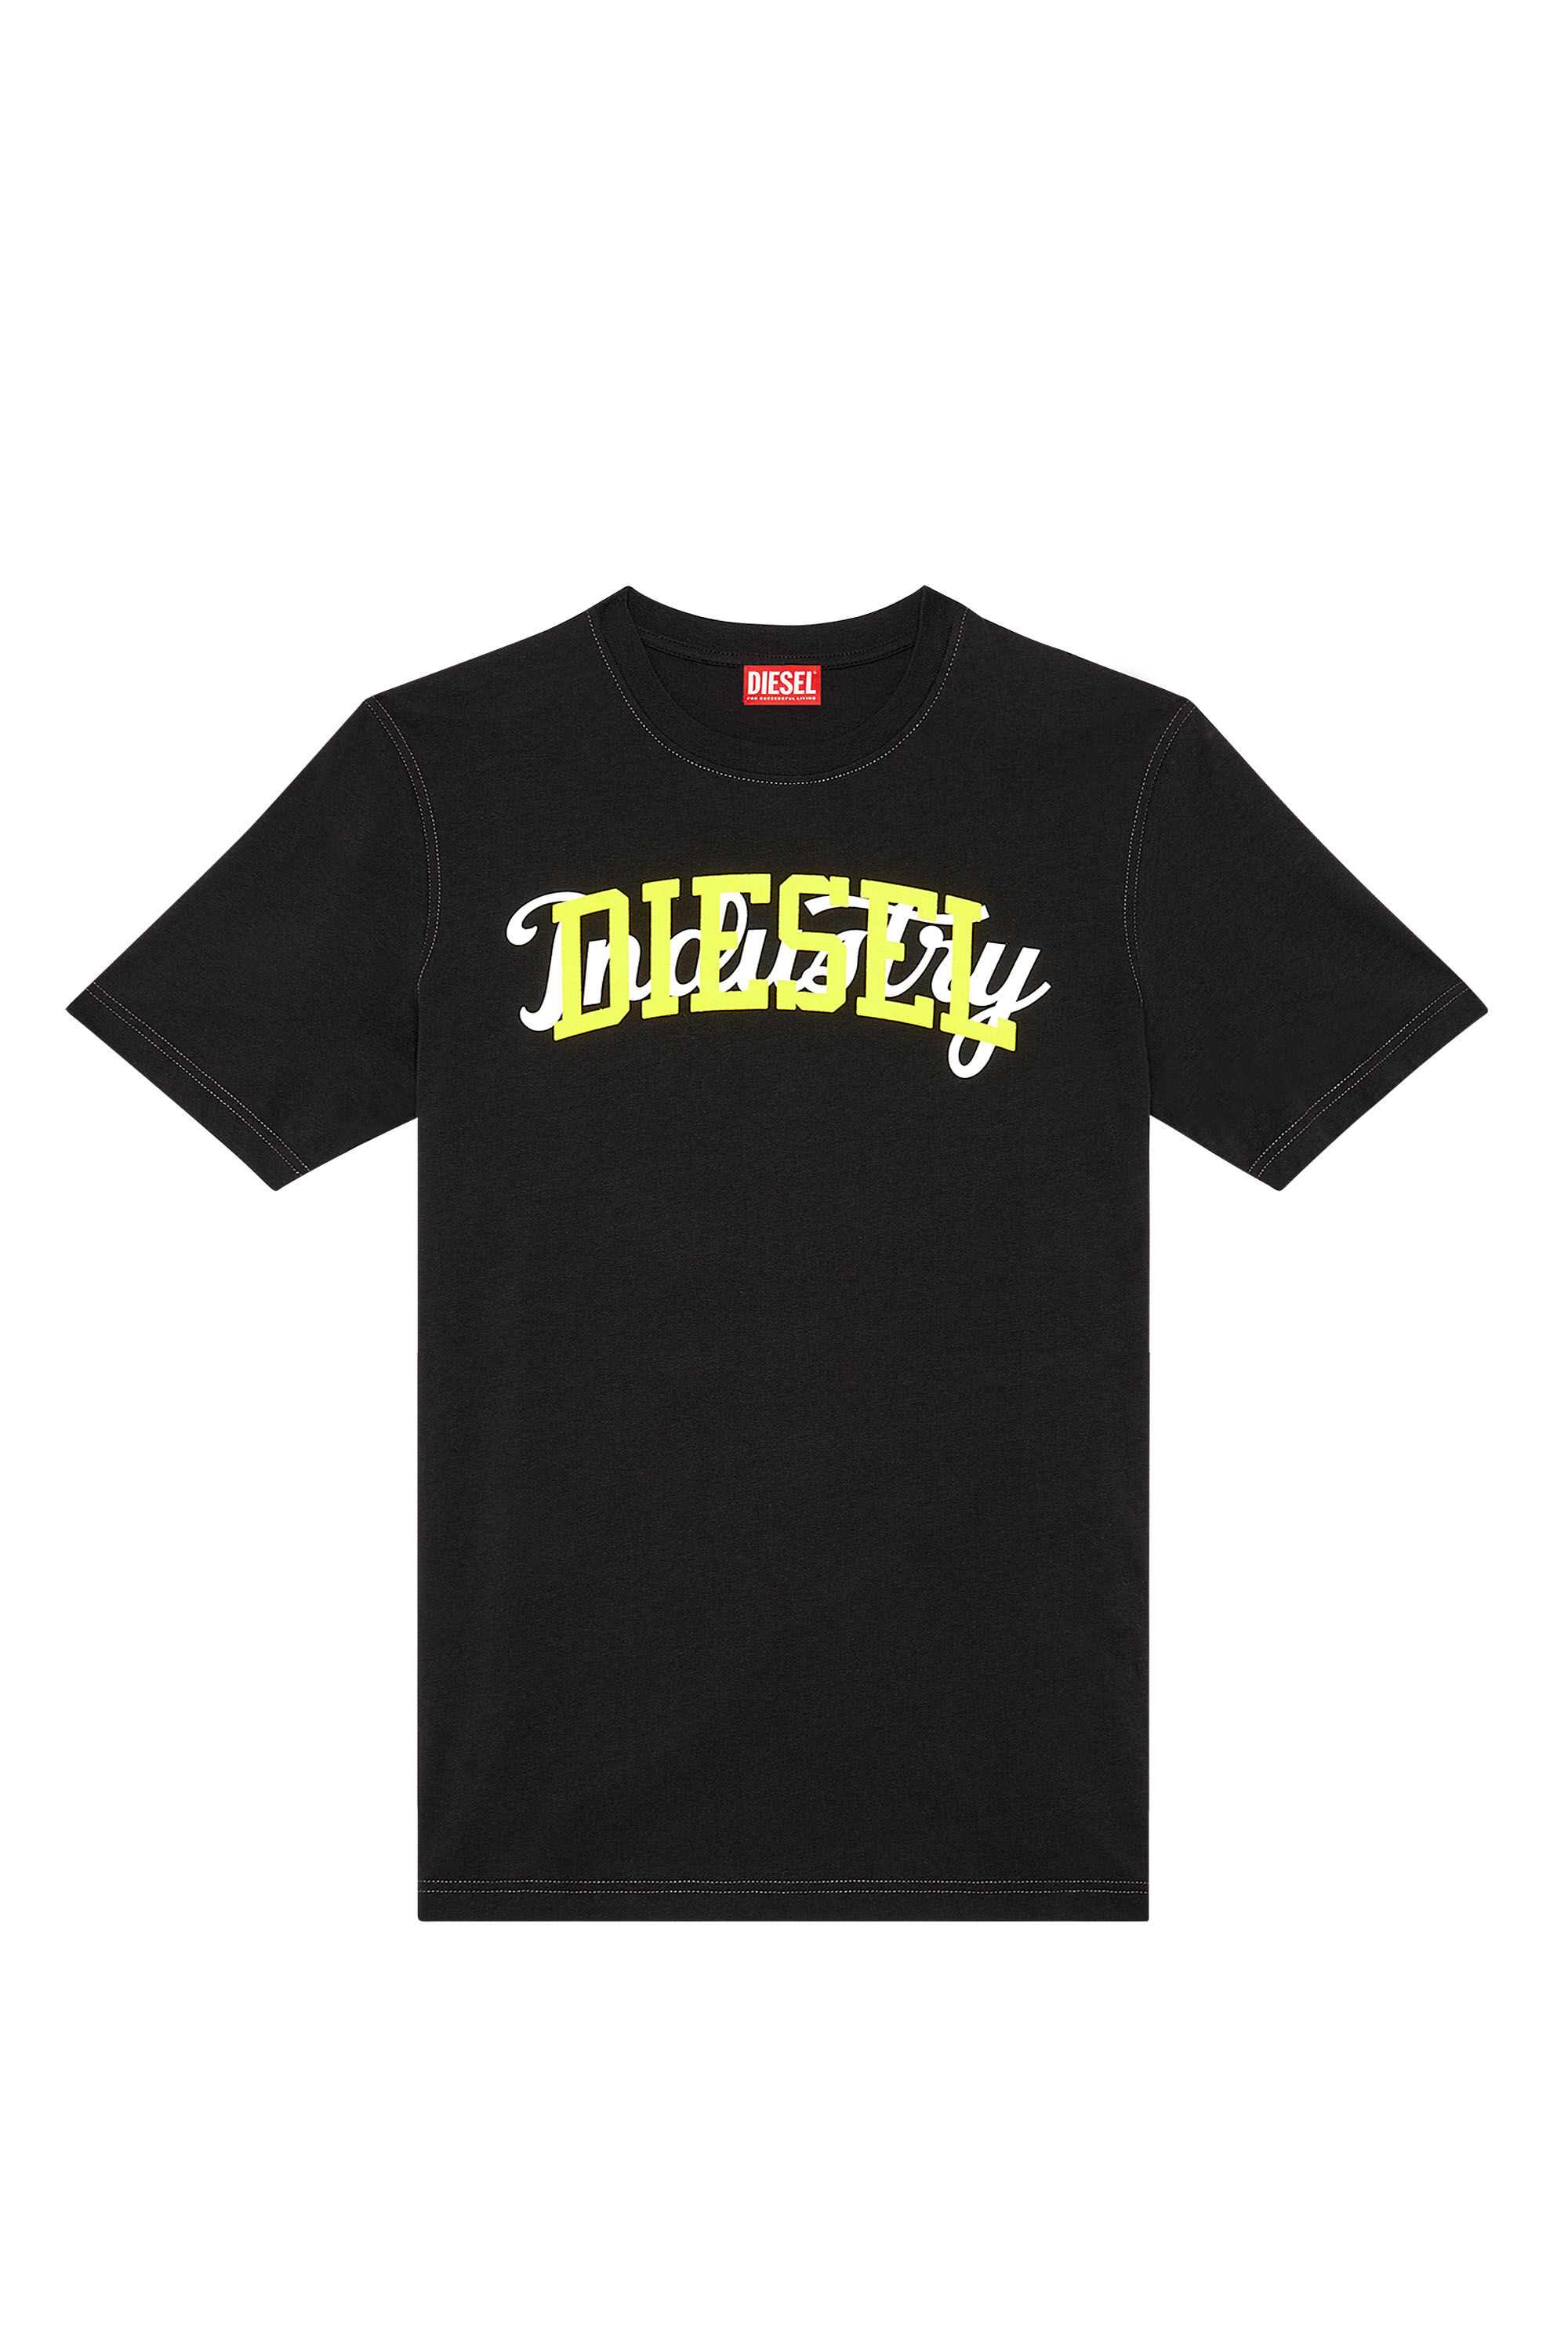 Diesel - T-JUST-N10, Man T-shirt with contrasting Diesel prints in Black - Image 2